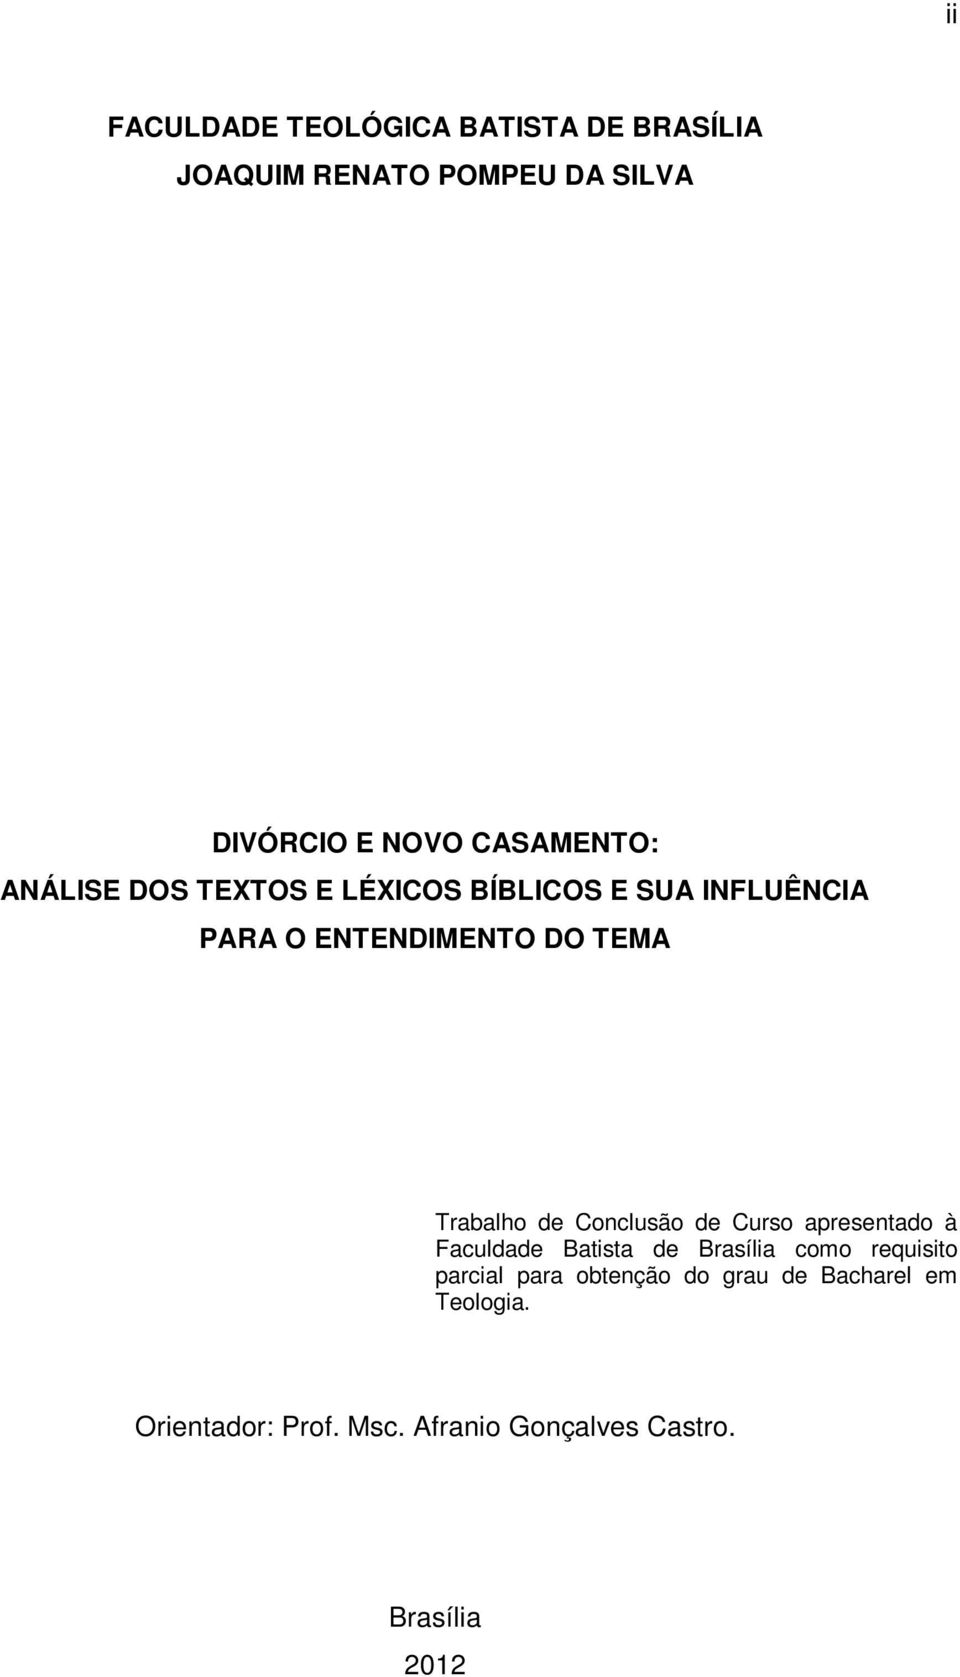 Trabalho de Conclusão de Curso apresentado à Faculdade Batista de Brasília como requisito parcial